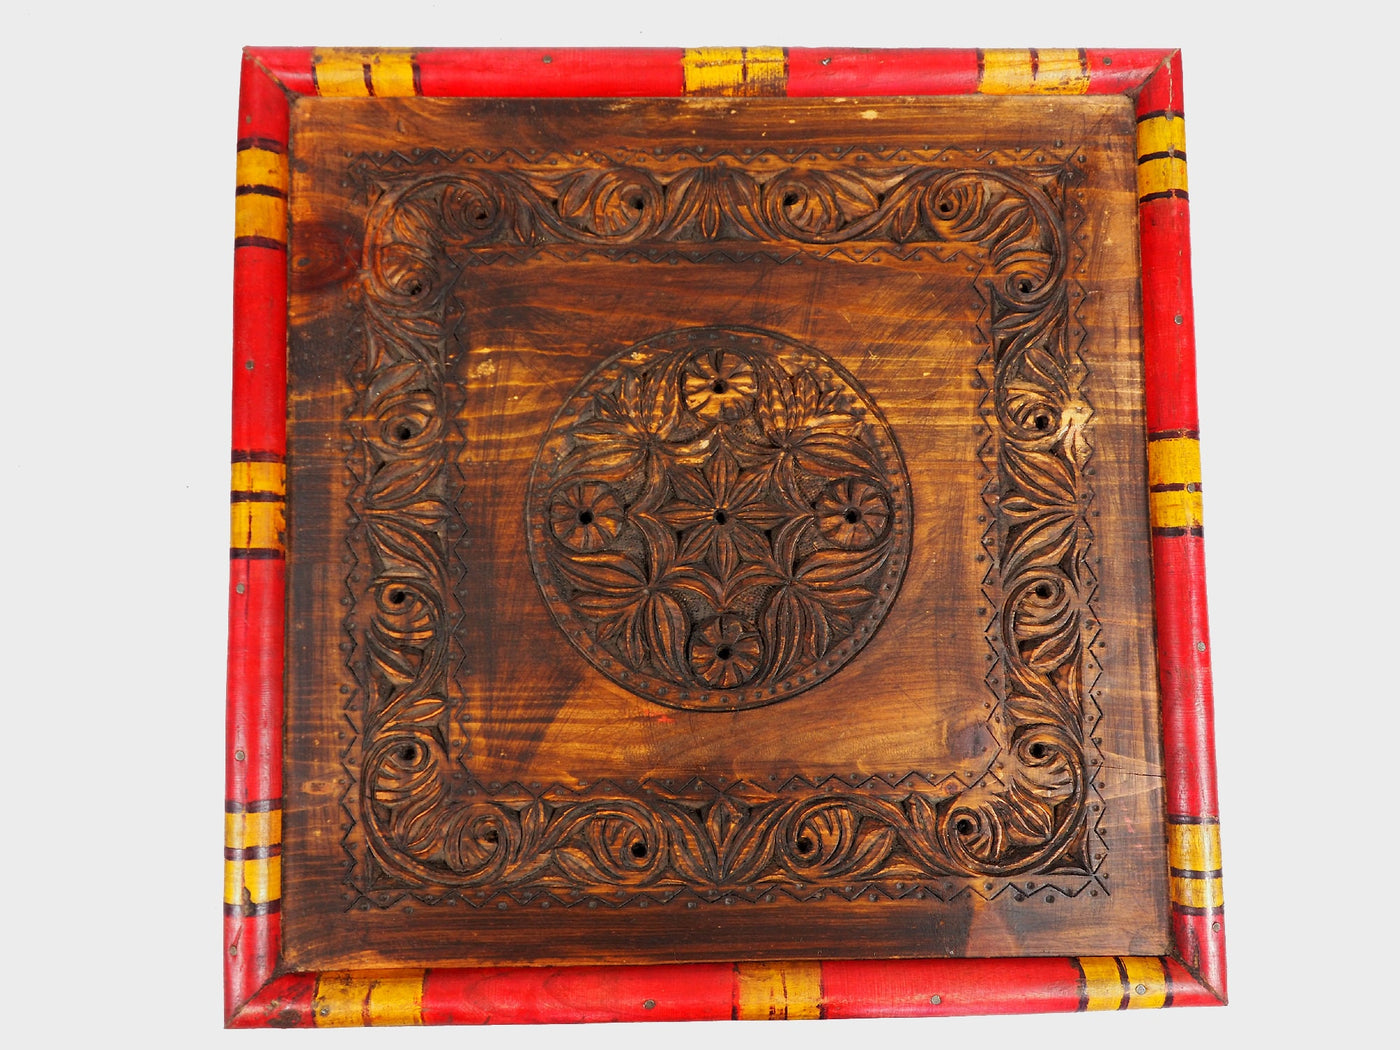 50x50 cm Massivholz handgeschnitzte Teetisch kolonialstil Wohnzimmertisch Tisch  tisch aus Afghanistan Nuristan Punjab Hocker Orientsbazar   